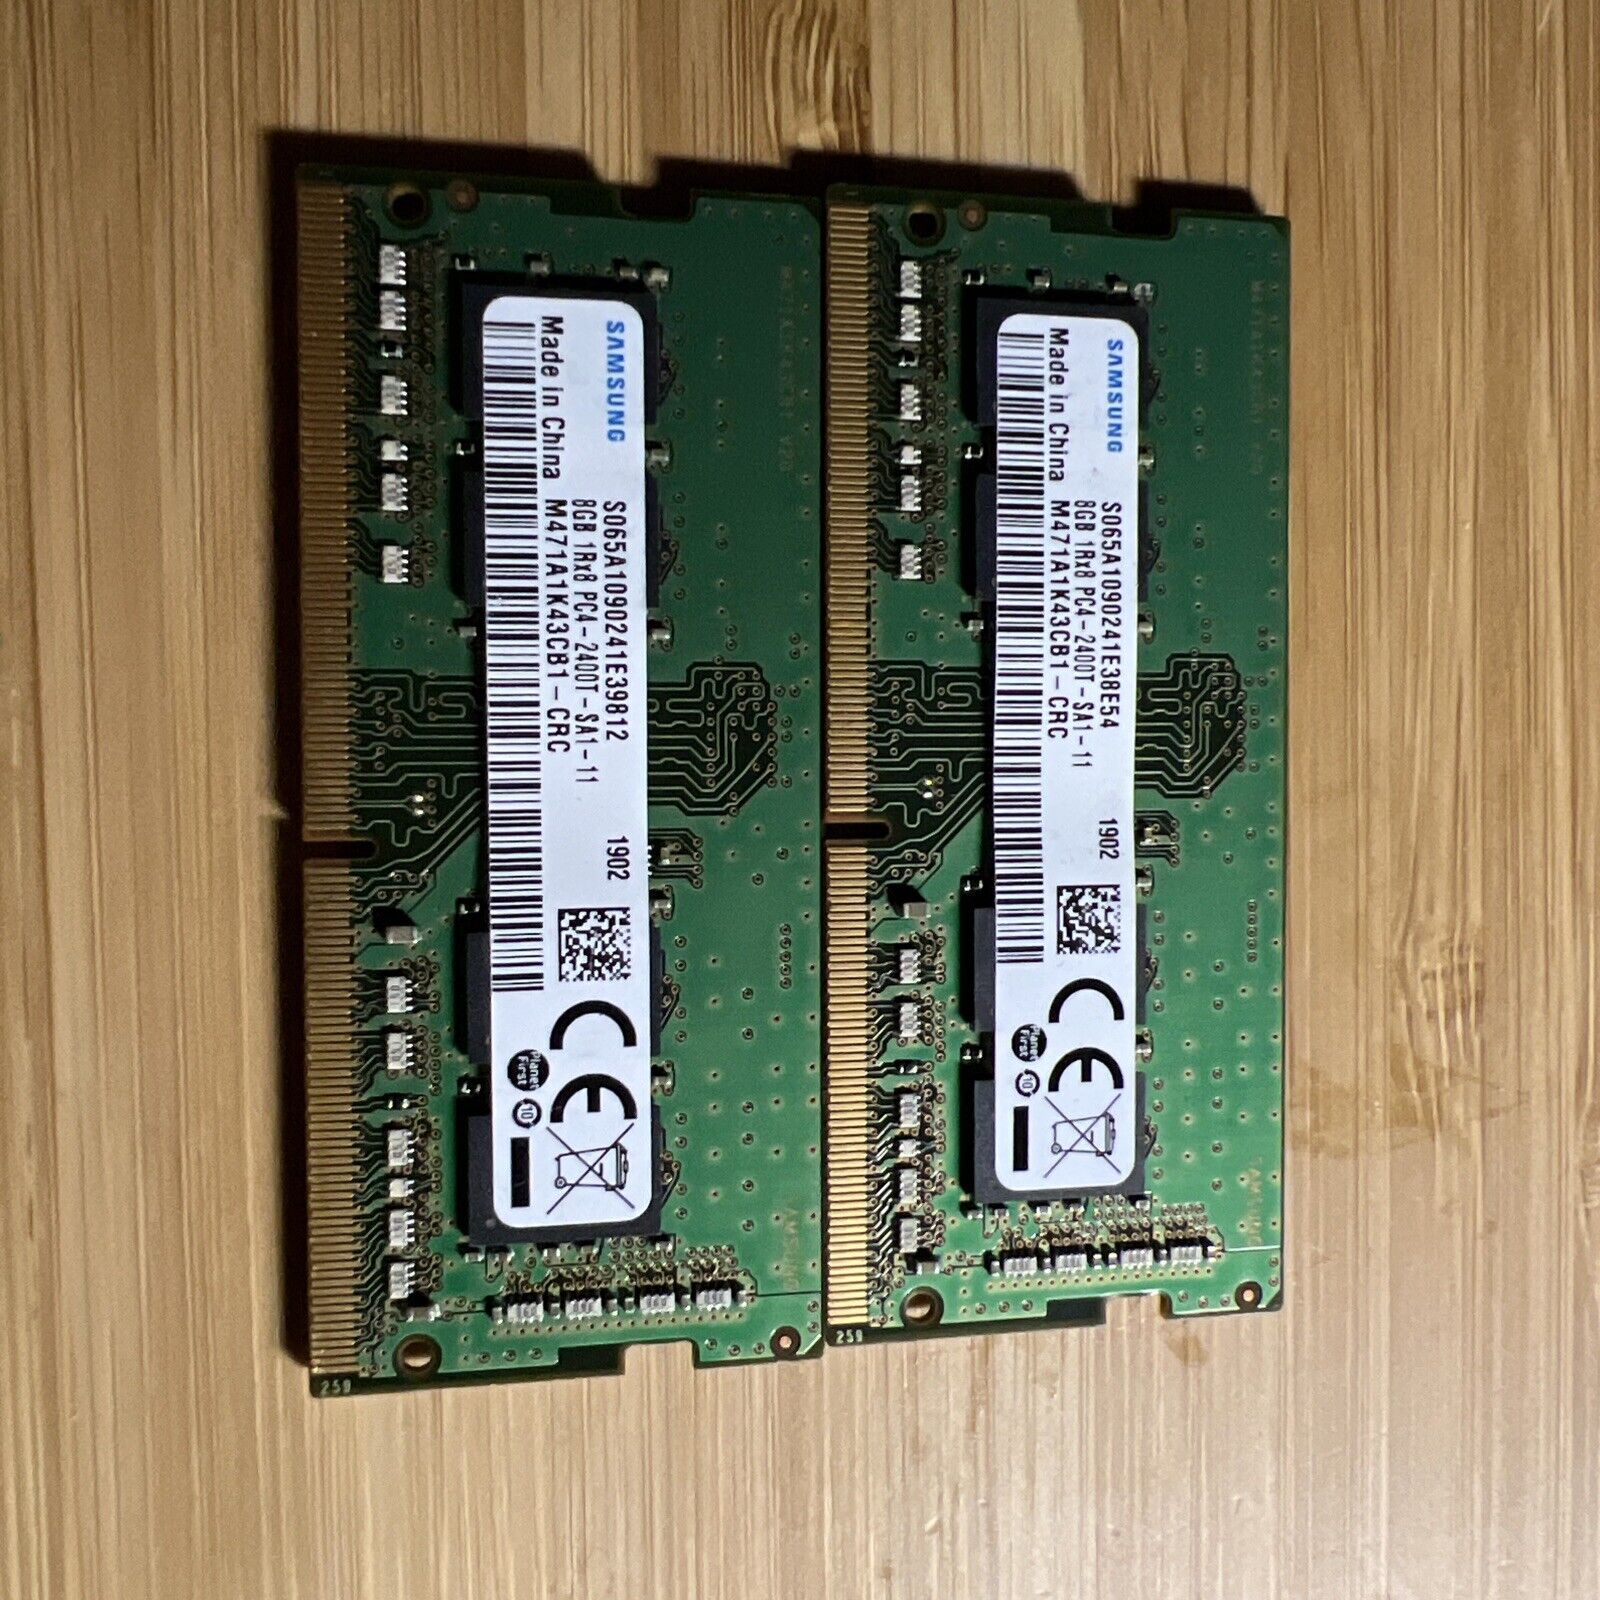 Samsung 16GB (2x8GB) PC4-19200 DDR4-2400T M471A1K43CB1-CRC 30 Days Warranty